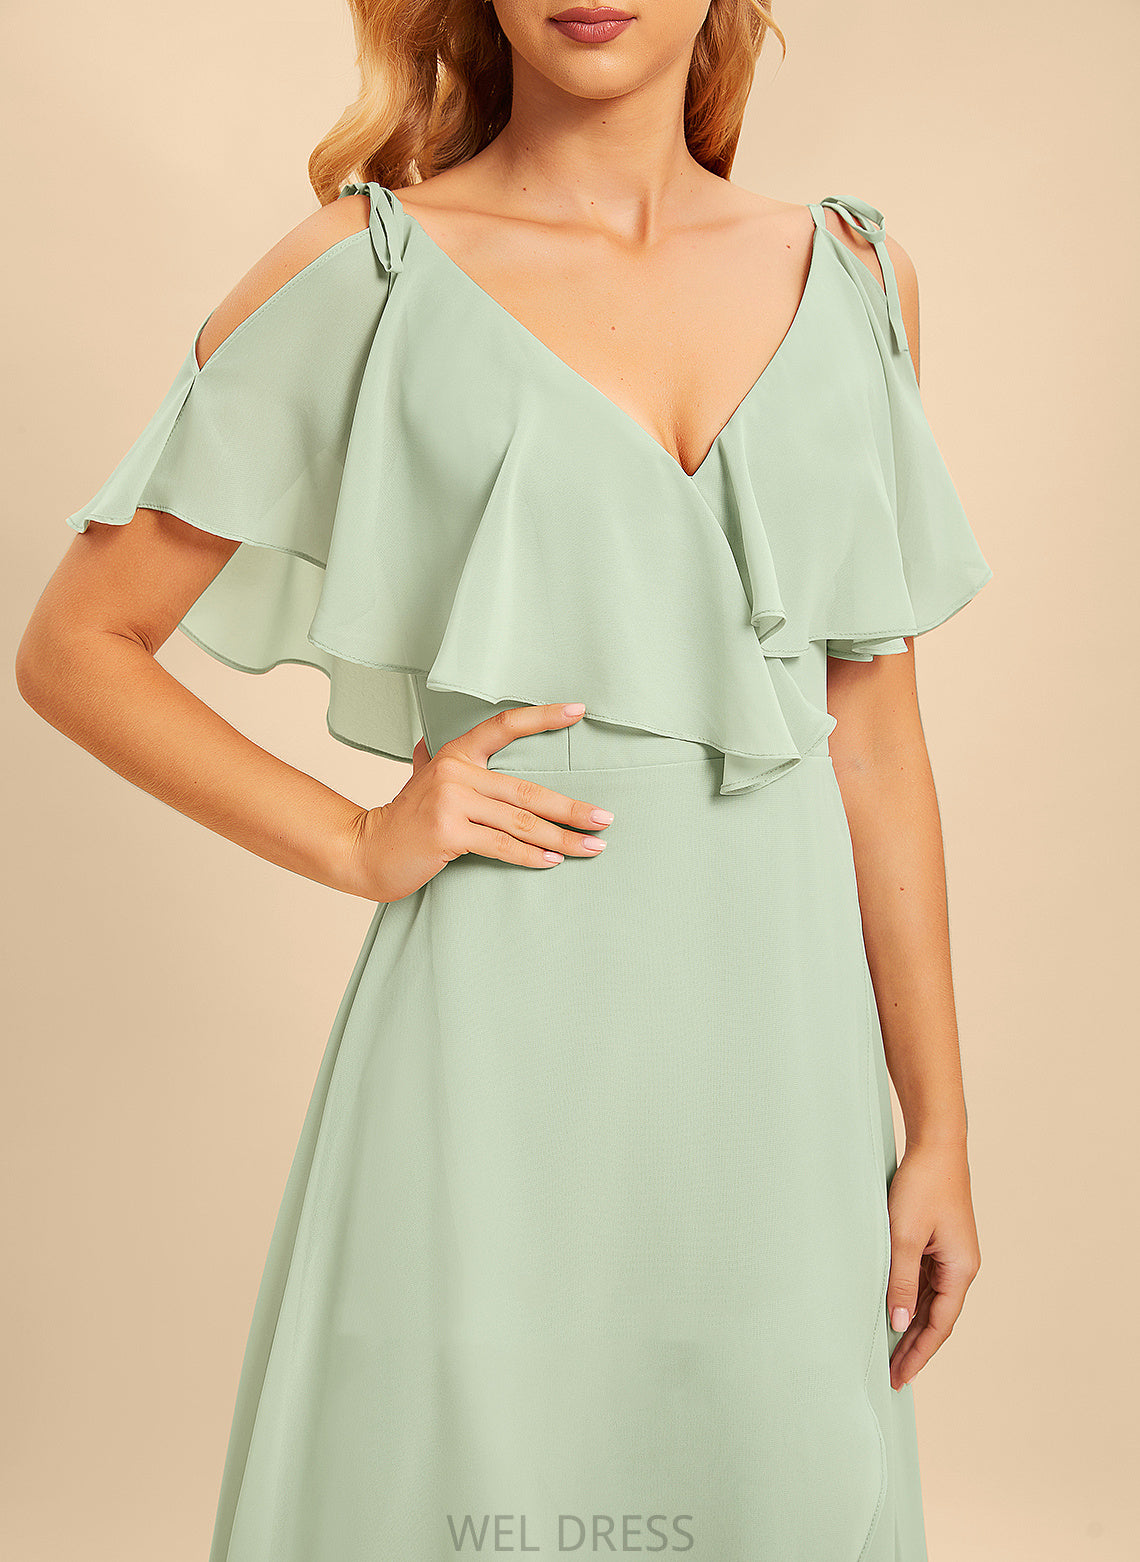 Asymmetrical A-Line V-neck Fabric Length Embellishment Silhouette Neckline Ruffle Xiomara A-Line/Princess Sleeveless Bridesmaid Dresses